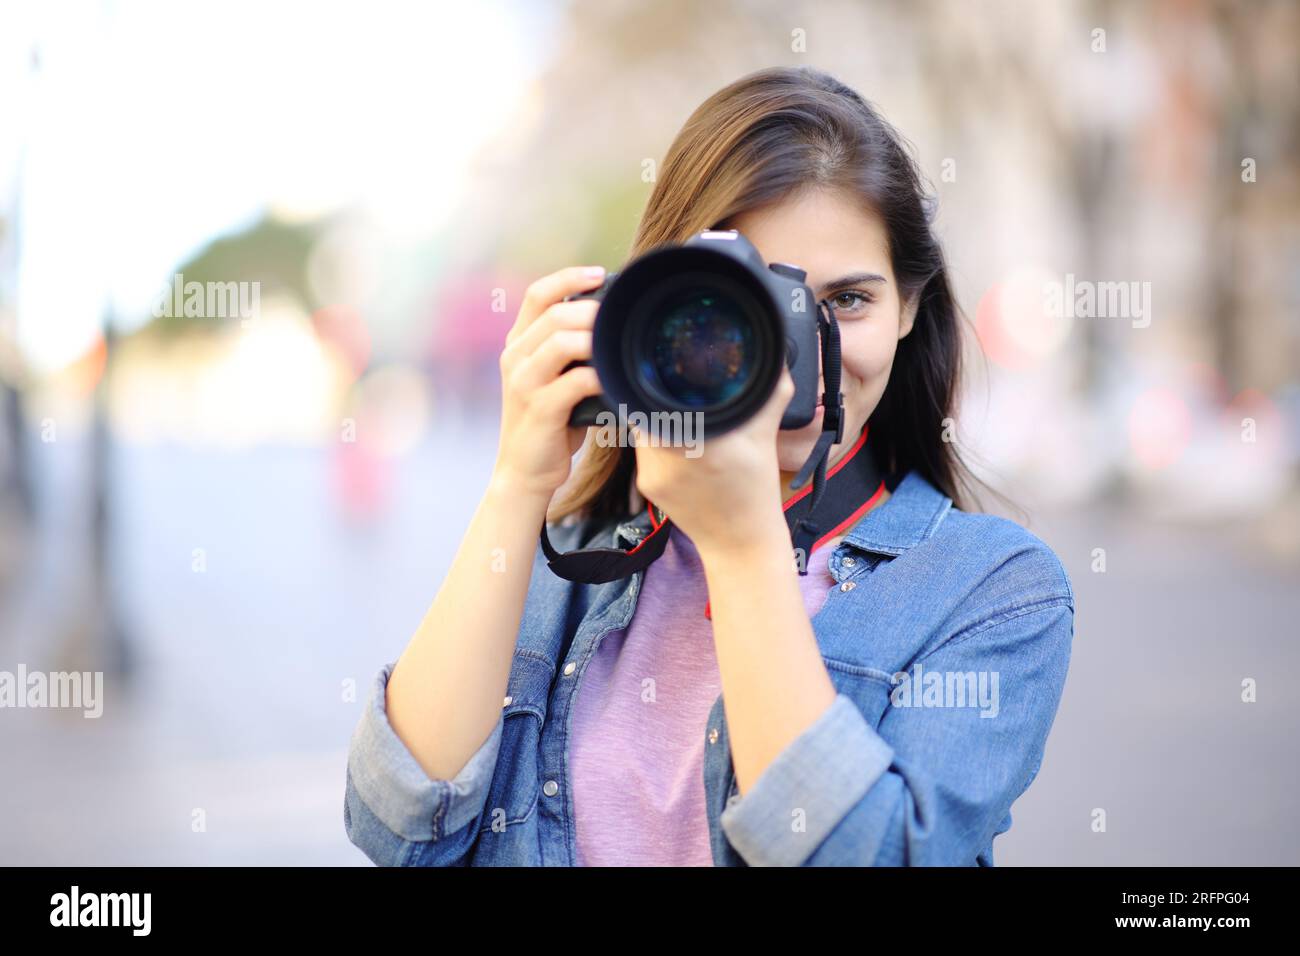 Photographe prenant des photos de vous avec un reflex numérique dans la rue Banque D'Images